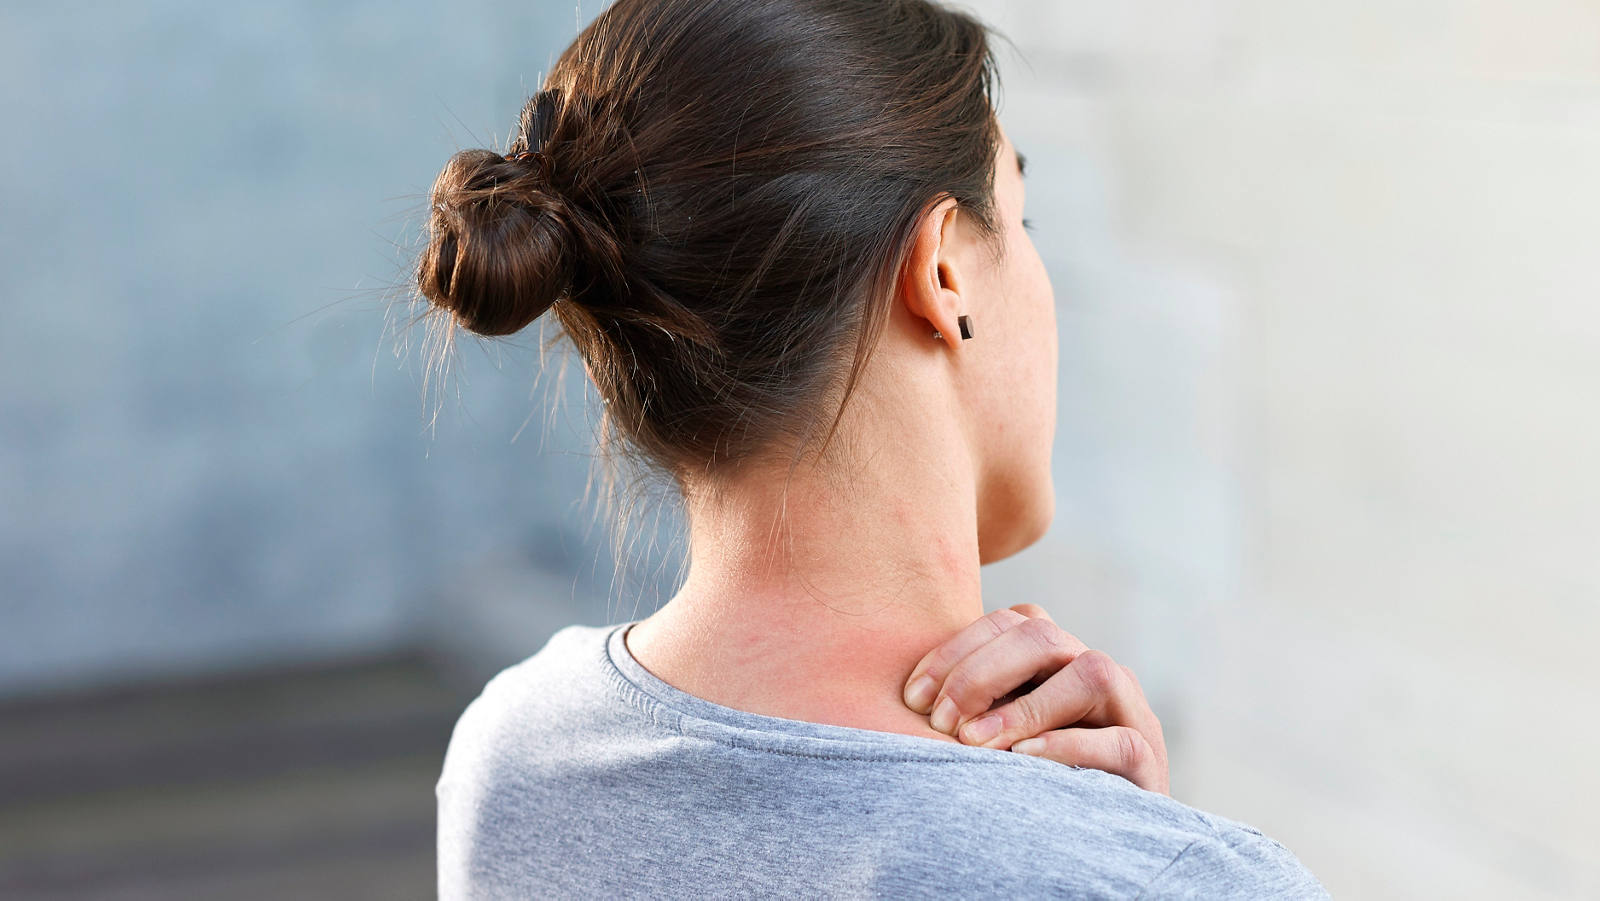 Massage de la nuque: masser un seul côté depuis l’arrière 